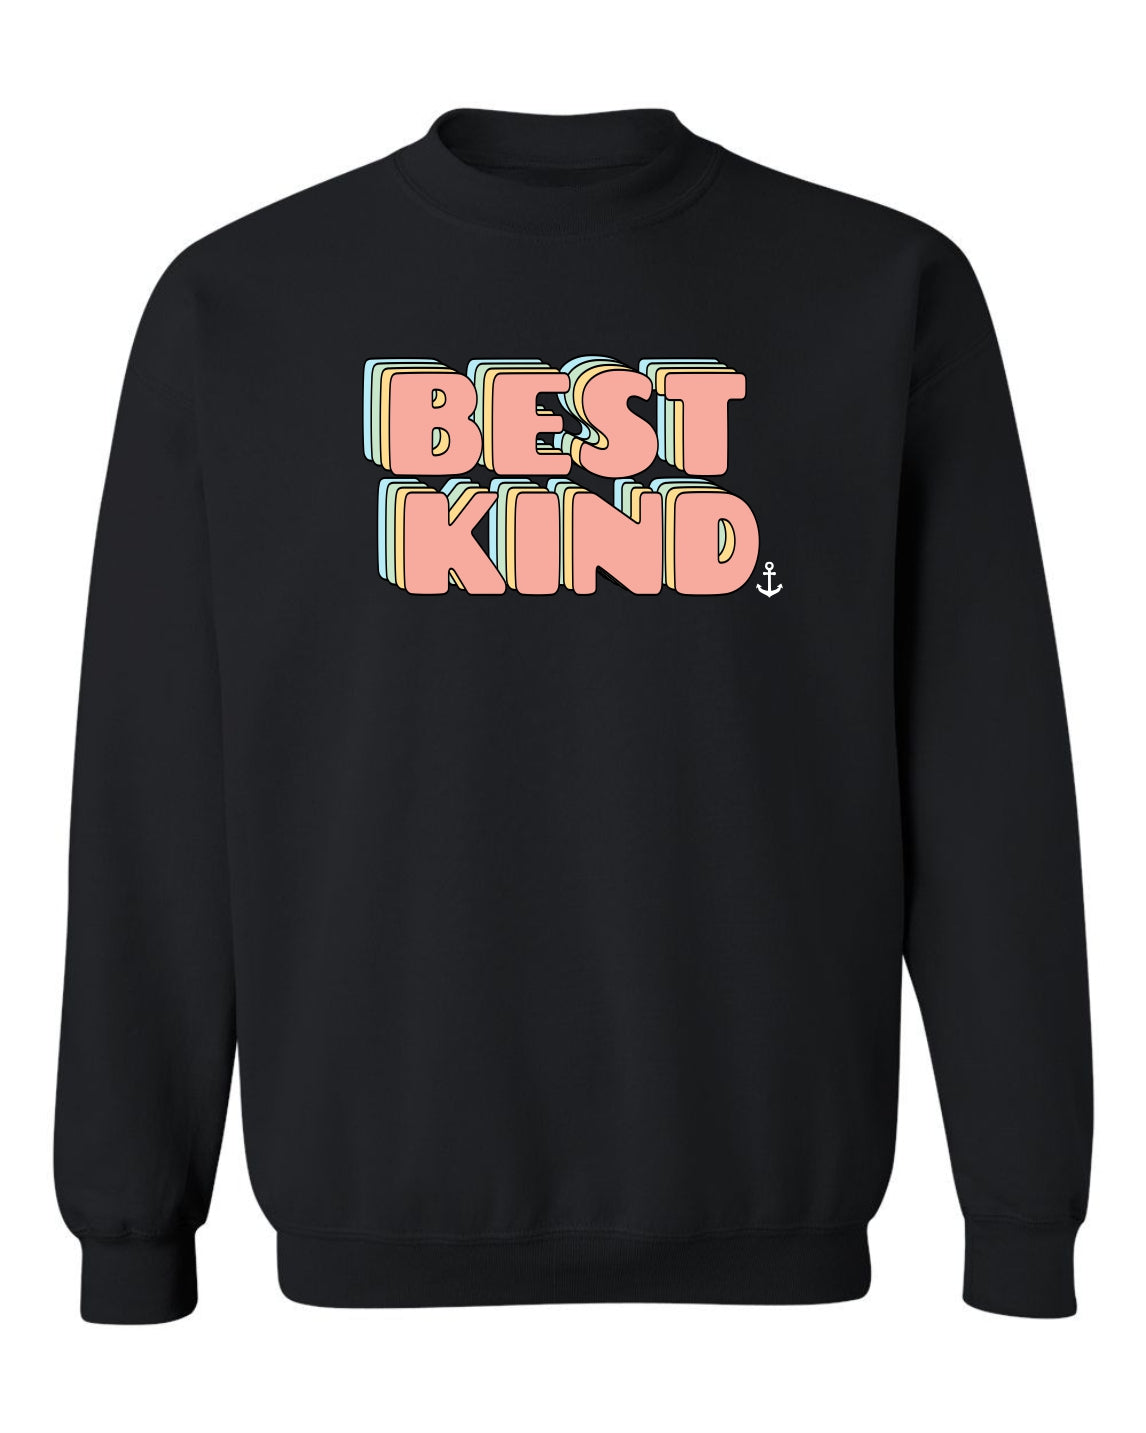 "Best Kind" Groovy Unisex Crewneck Sweatshirt